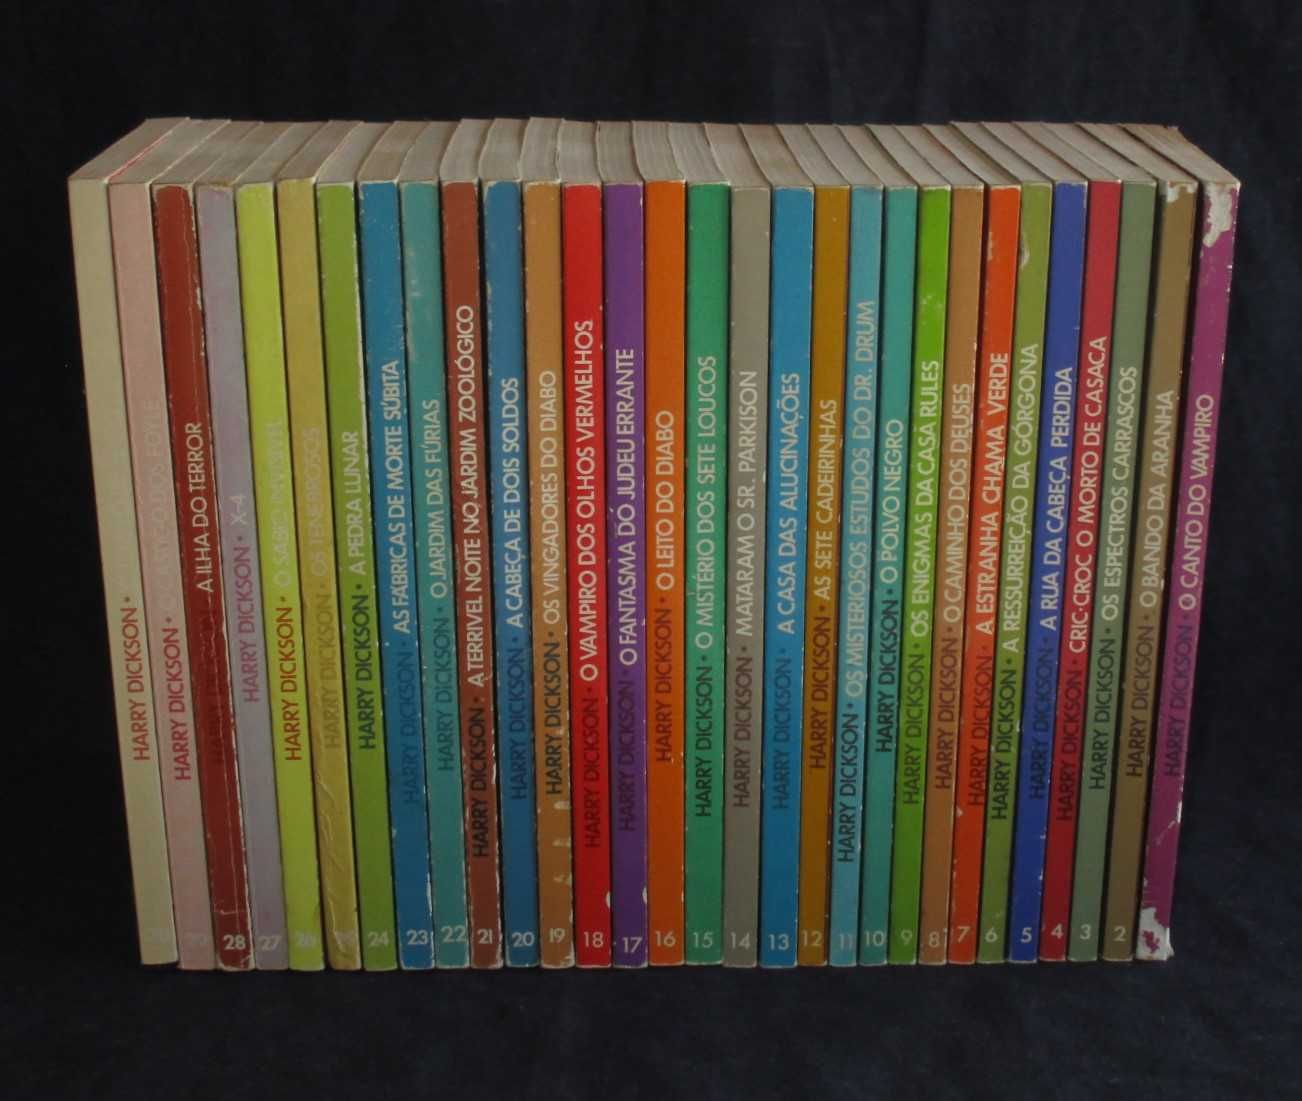 Livros Colecção Harry Dickson Jean Ray 30 volumes Completa